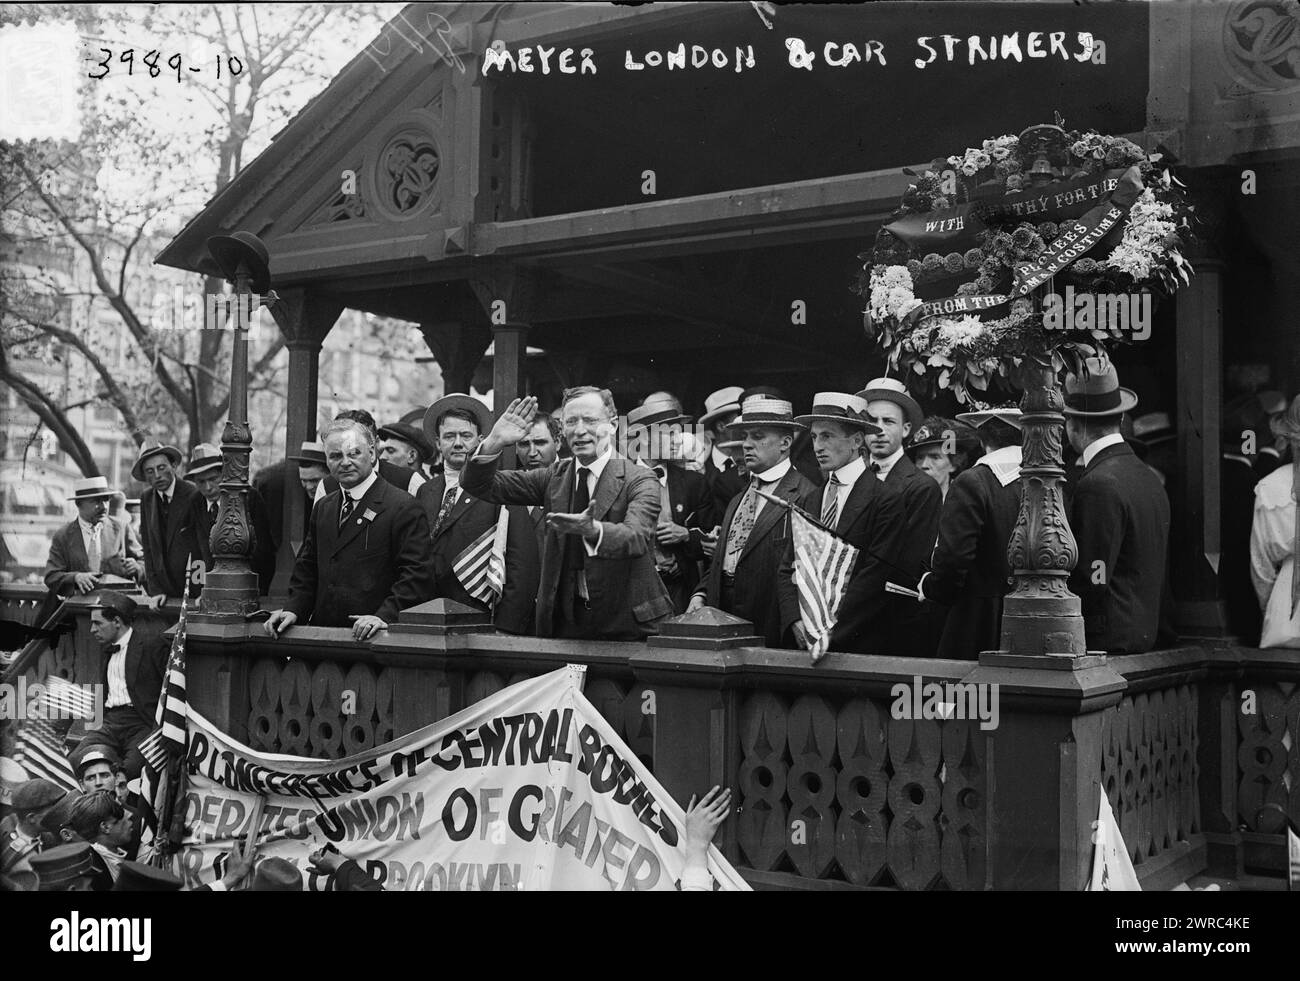 Meyer London & car Strikers, Photo Shows U.S. Congressman Meyer London (1871-1926)., 1916 July 15., Glass negatives, 1 negative: Glass Foto Stock